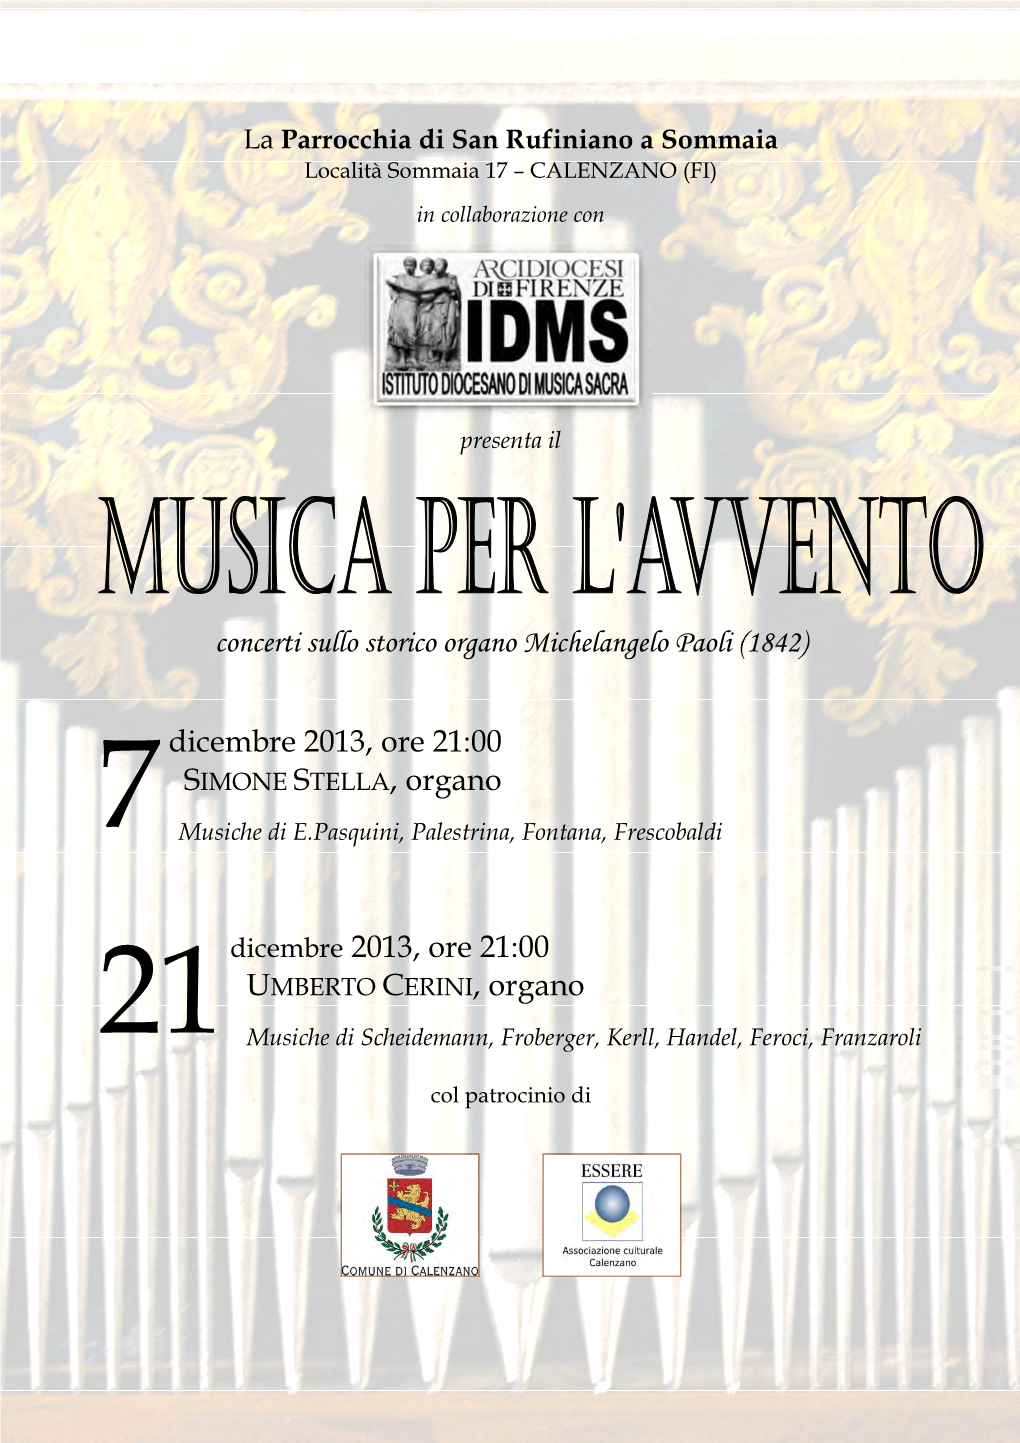 Concerti Sullo Storico Organo Michelangelo Paoli (1842) Dicembre 2013, Ore 21:00 SIMONE STELLA, Organo Dicembre 2013, Ore 21:00